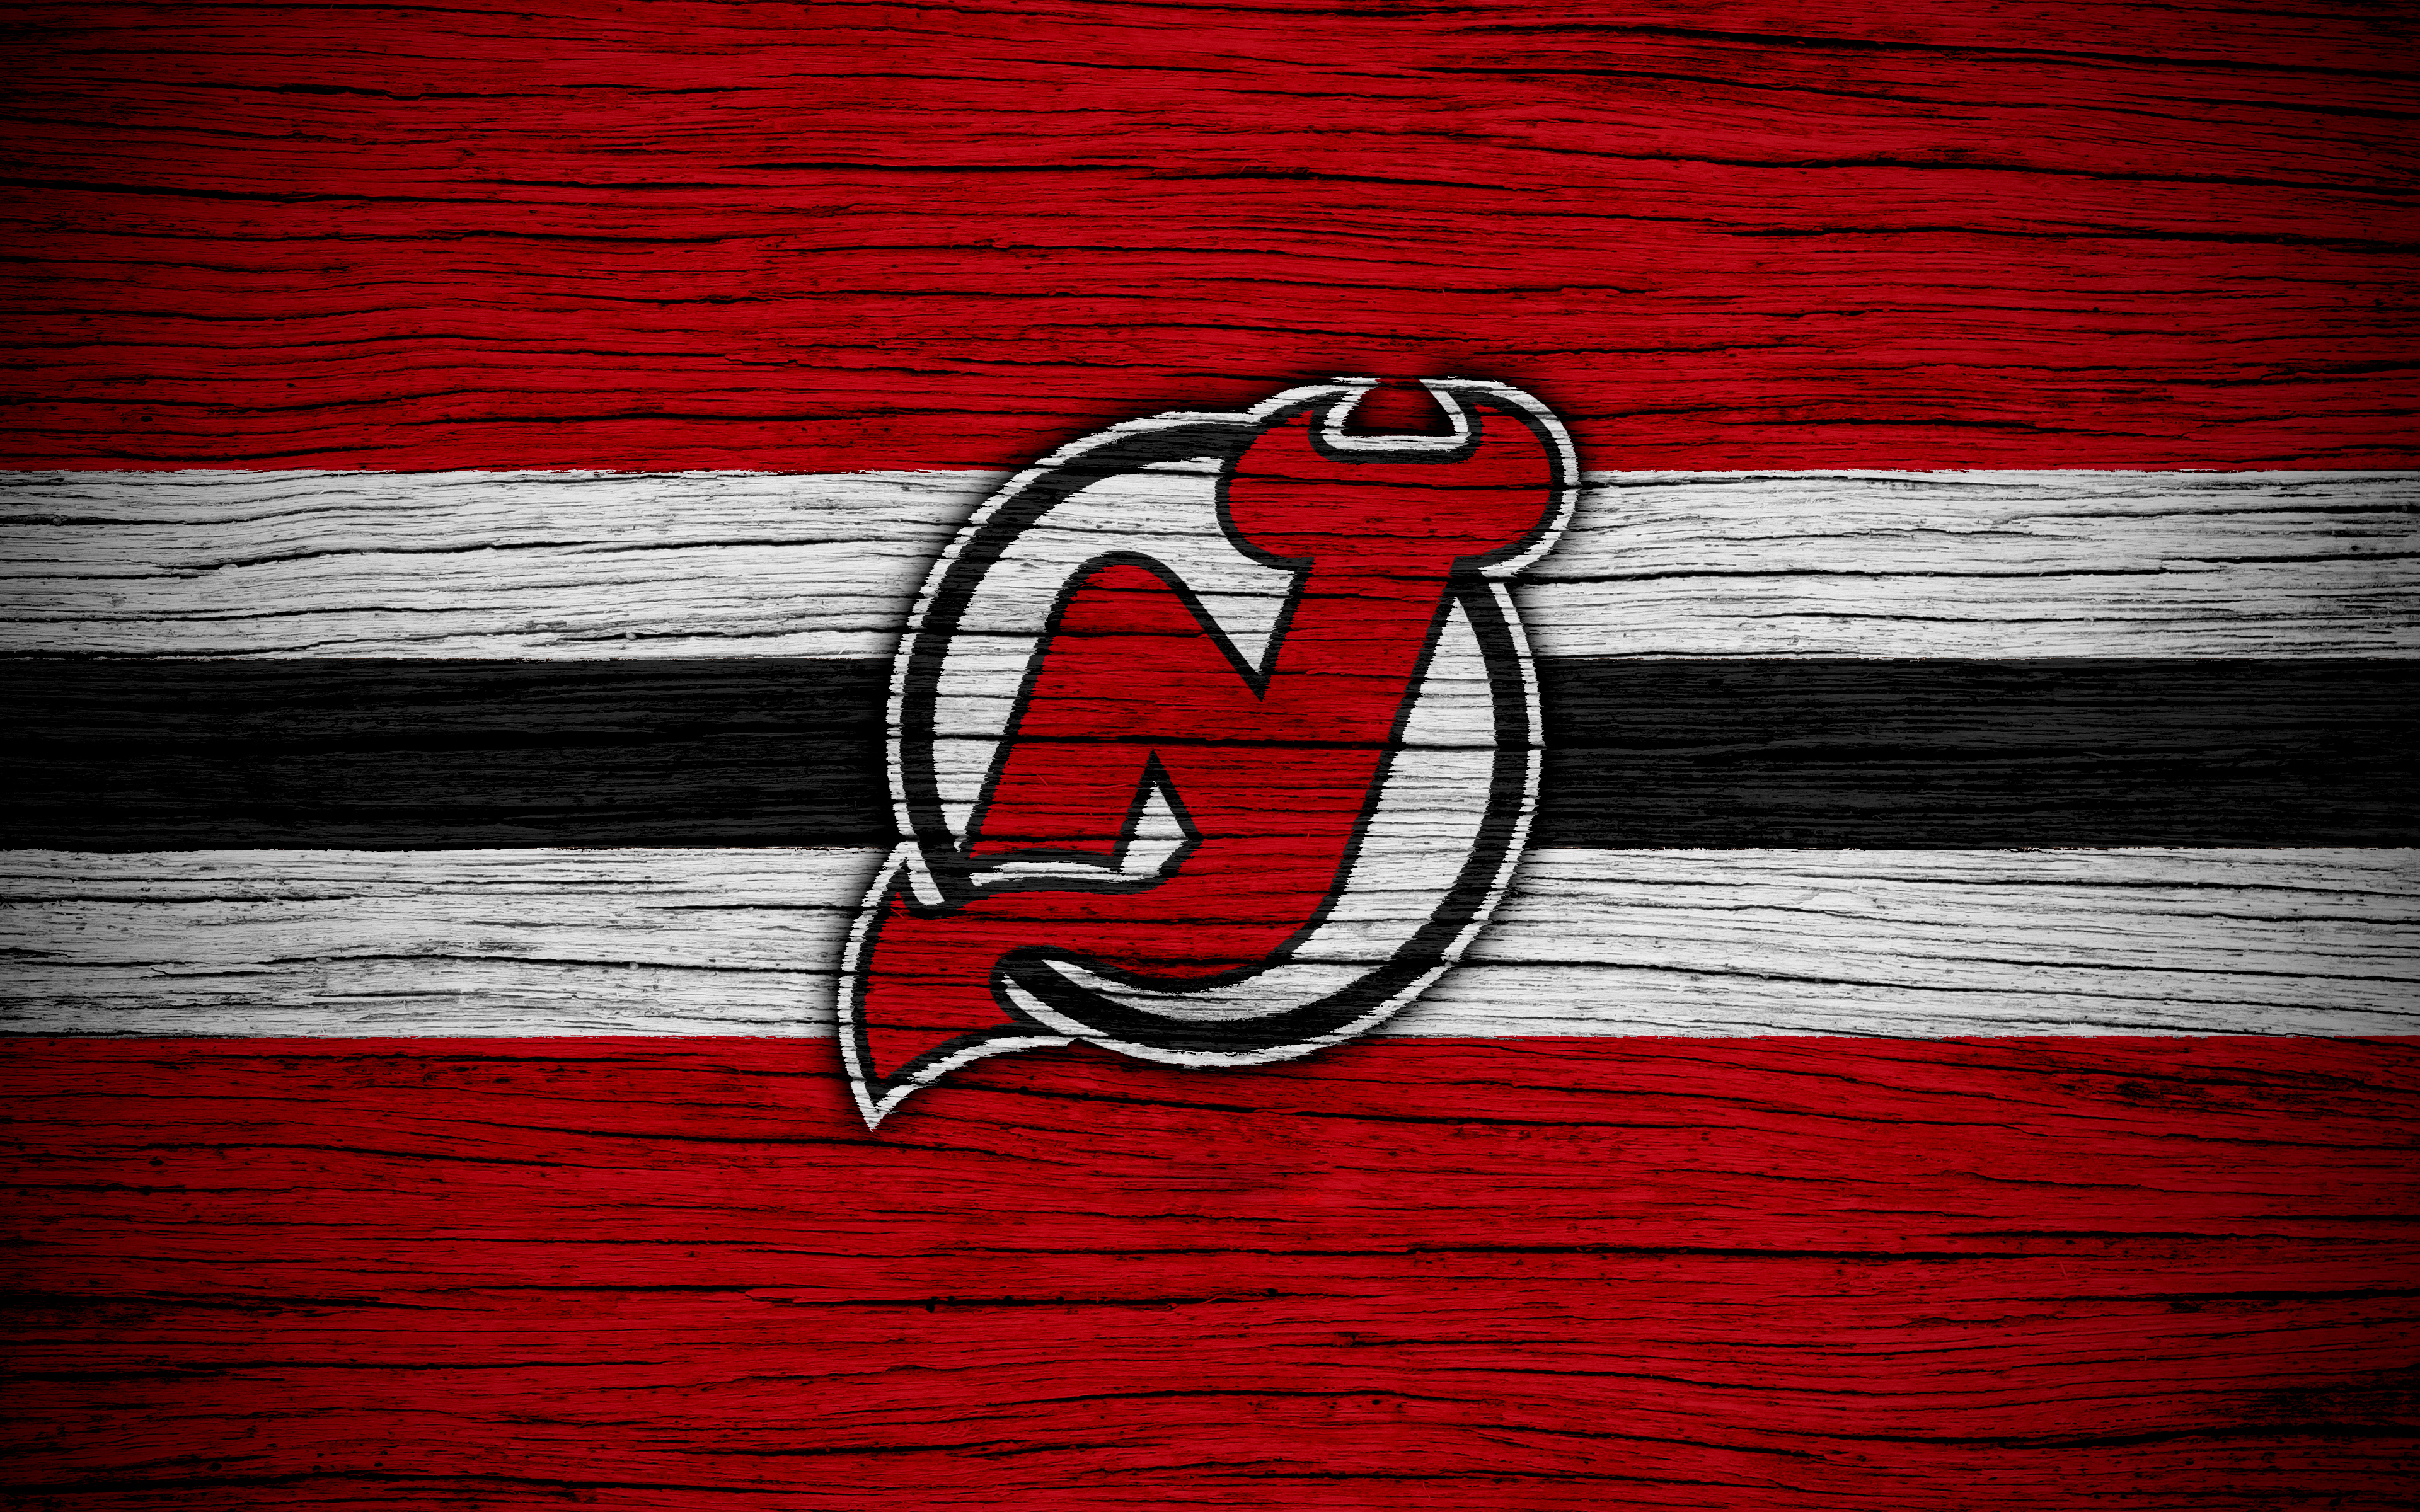 new jersey devils, sports, emblem, logo, nhl, hockey